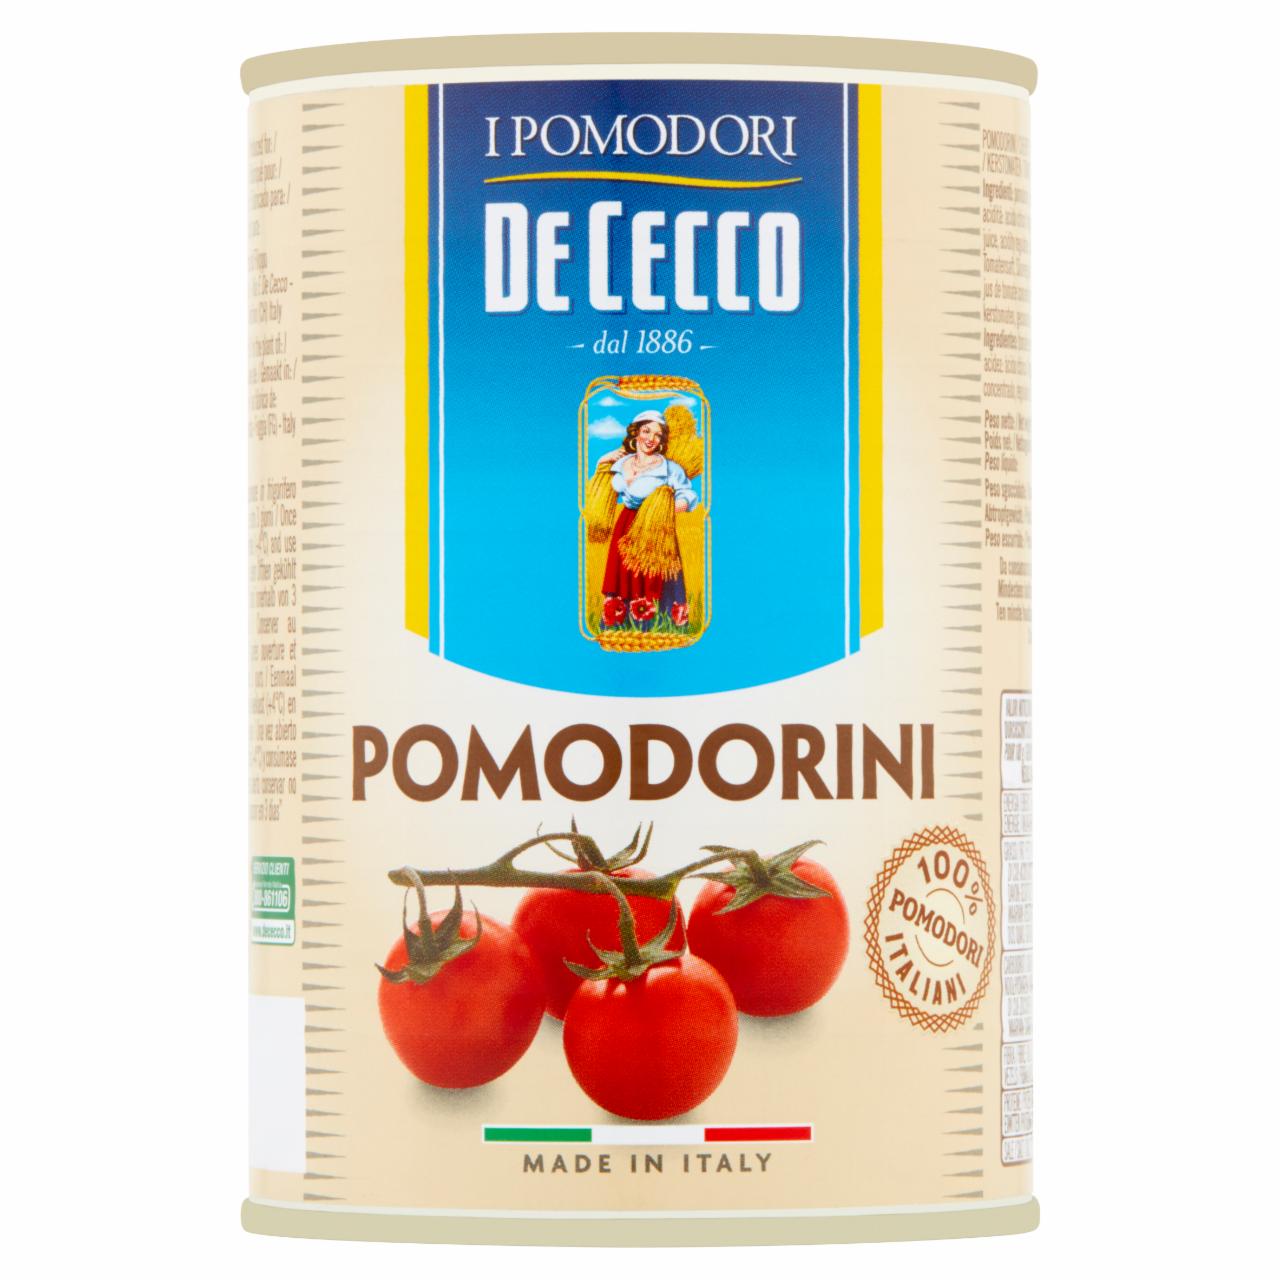 Zdjęcia - Pomidory w puszce 400 g De Cecco